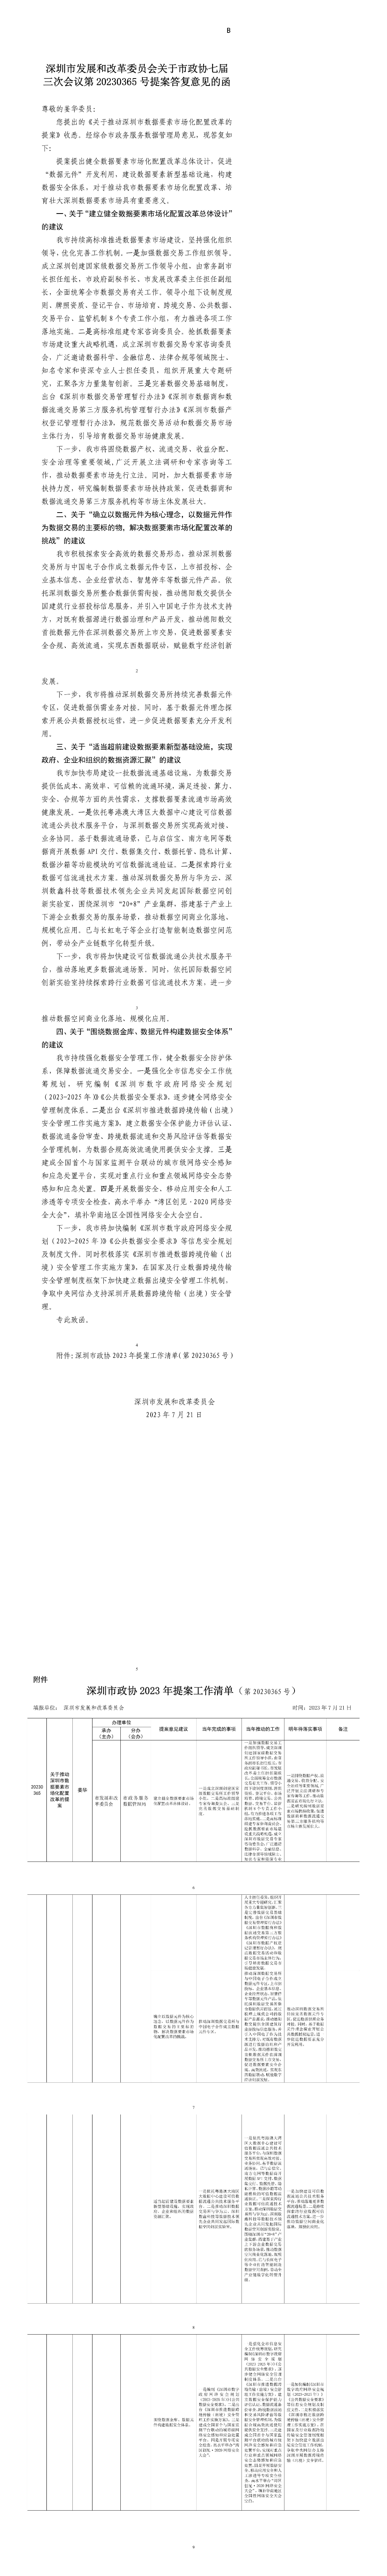 深圳市发展和改革委员会关于市政协七届三次会议第20230365号提案答复意见的函.jpg